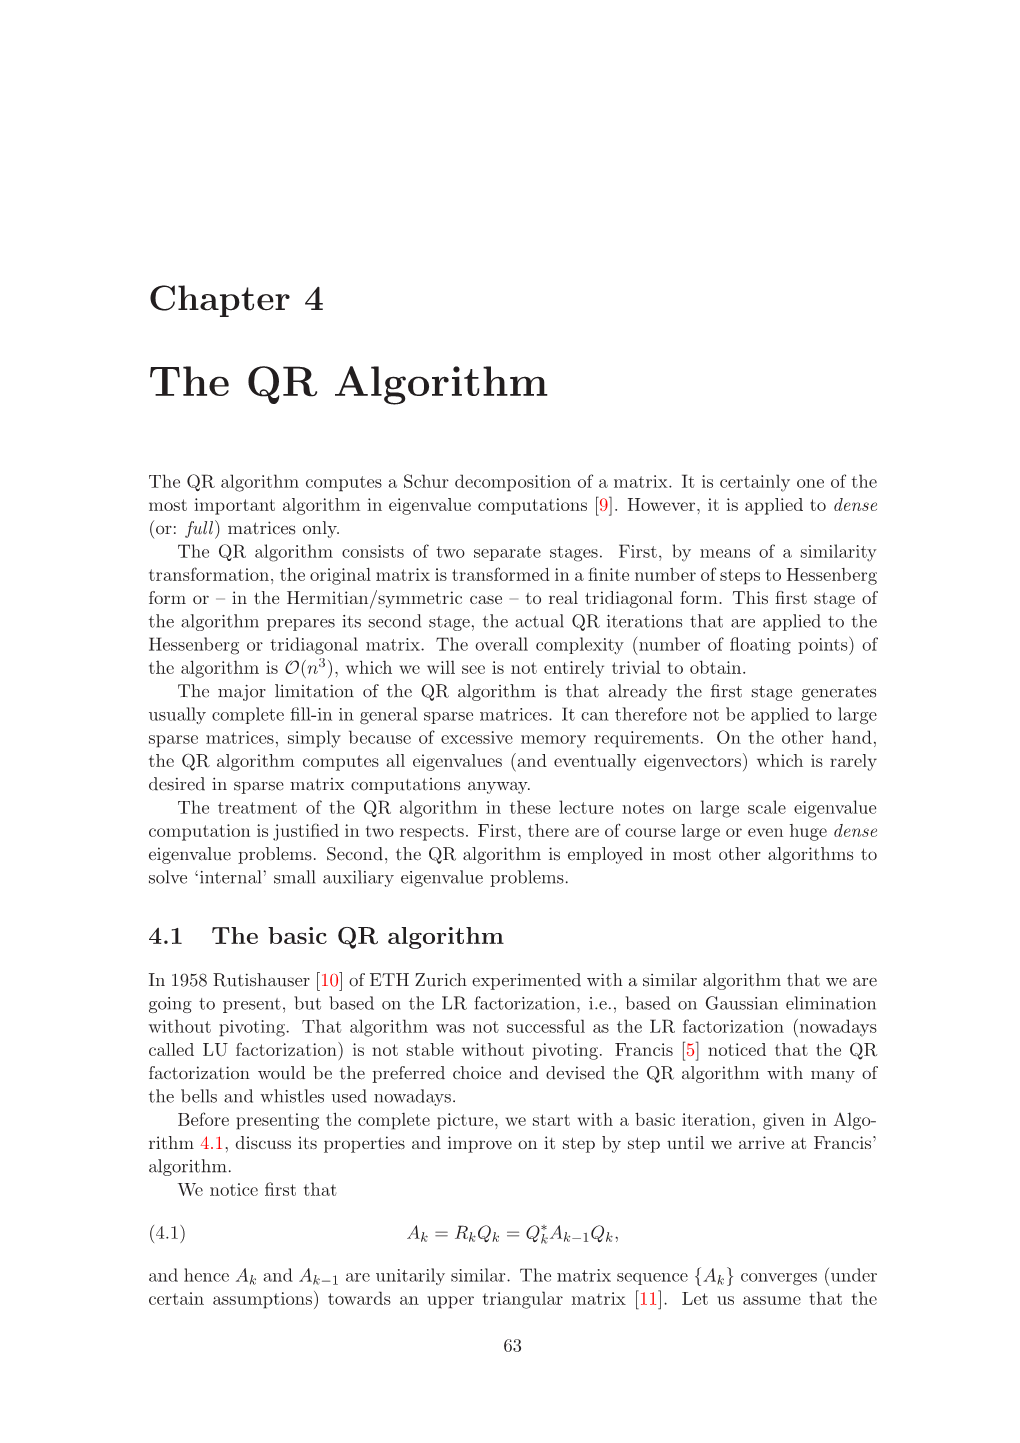 The QR Algorithm